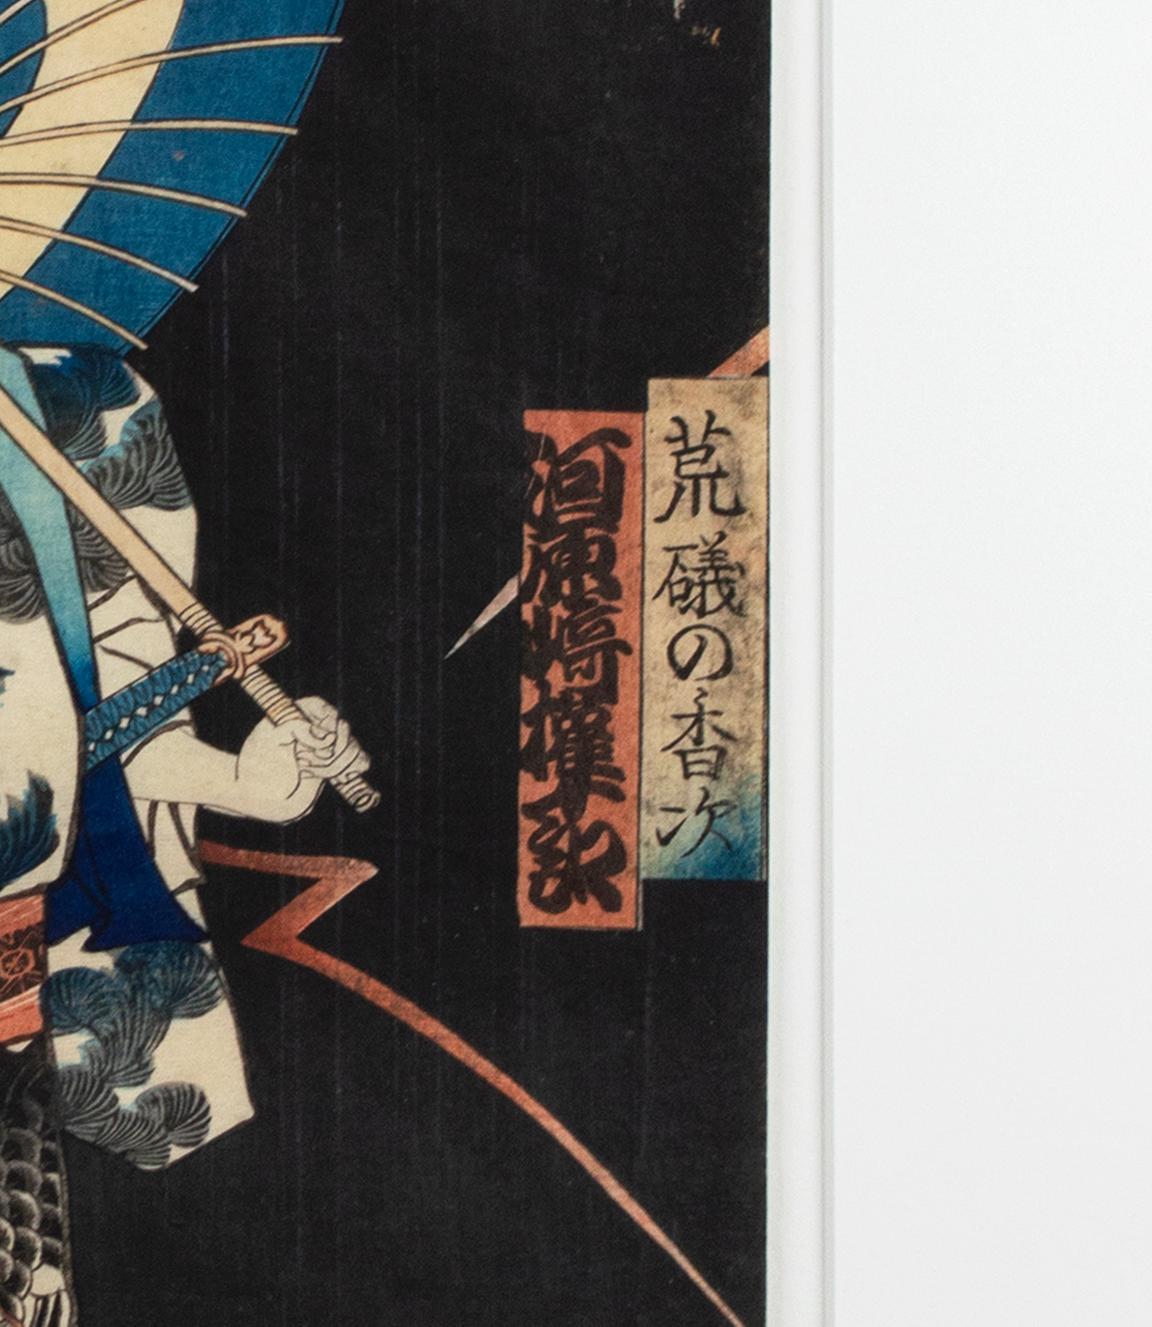 Certaines des images imprimées les plus populaires de la tradition ukiyo-e japonaise tardive étaient des représentations de célébrités, comme cette estampe de Kawarazaki Gonjuro jouant le rôle d'Araiso no Koji. Kawarazaki Gonjuro apparaît dans des